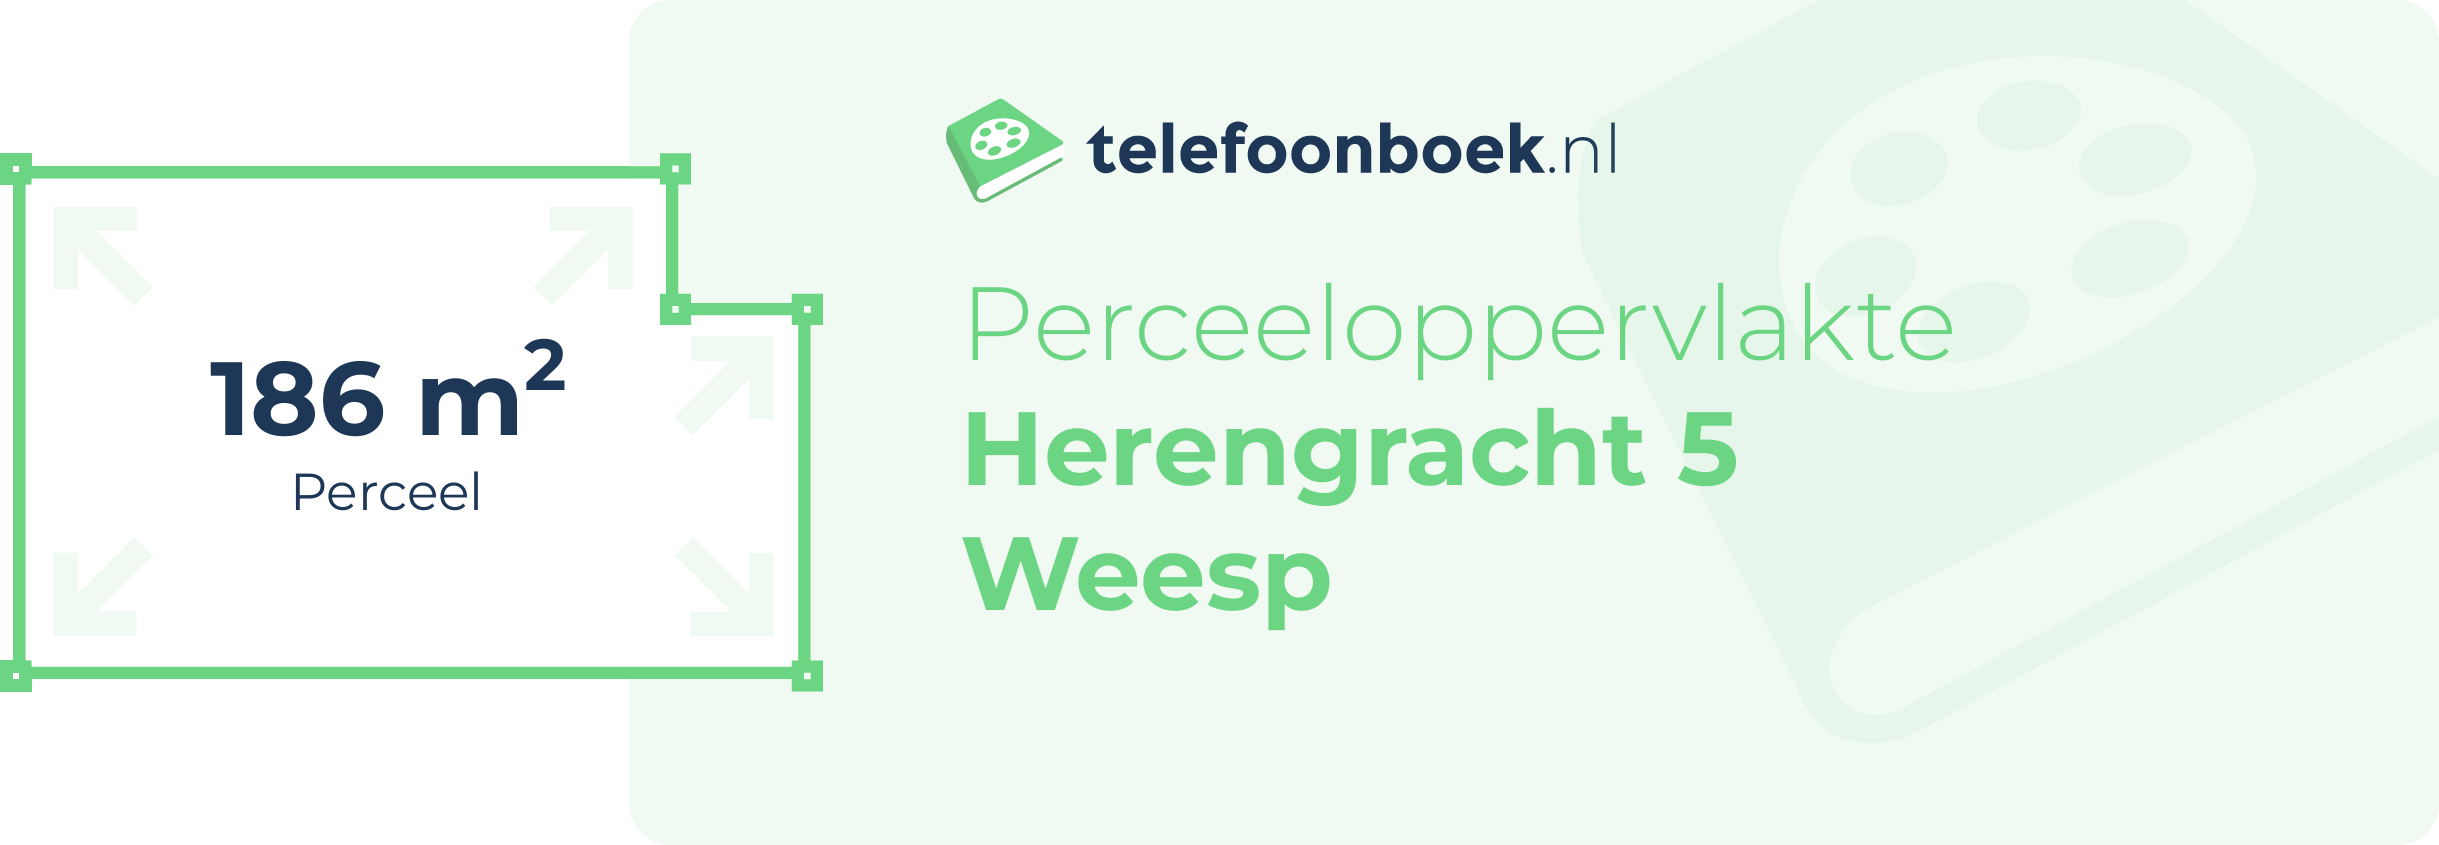 Perceeloppervlakte Herengracht 5 Weesp